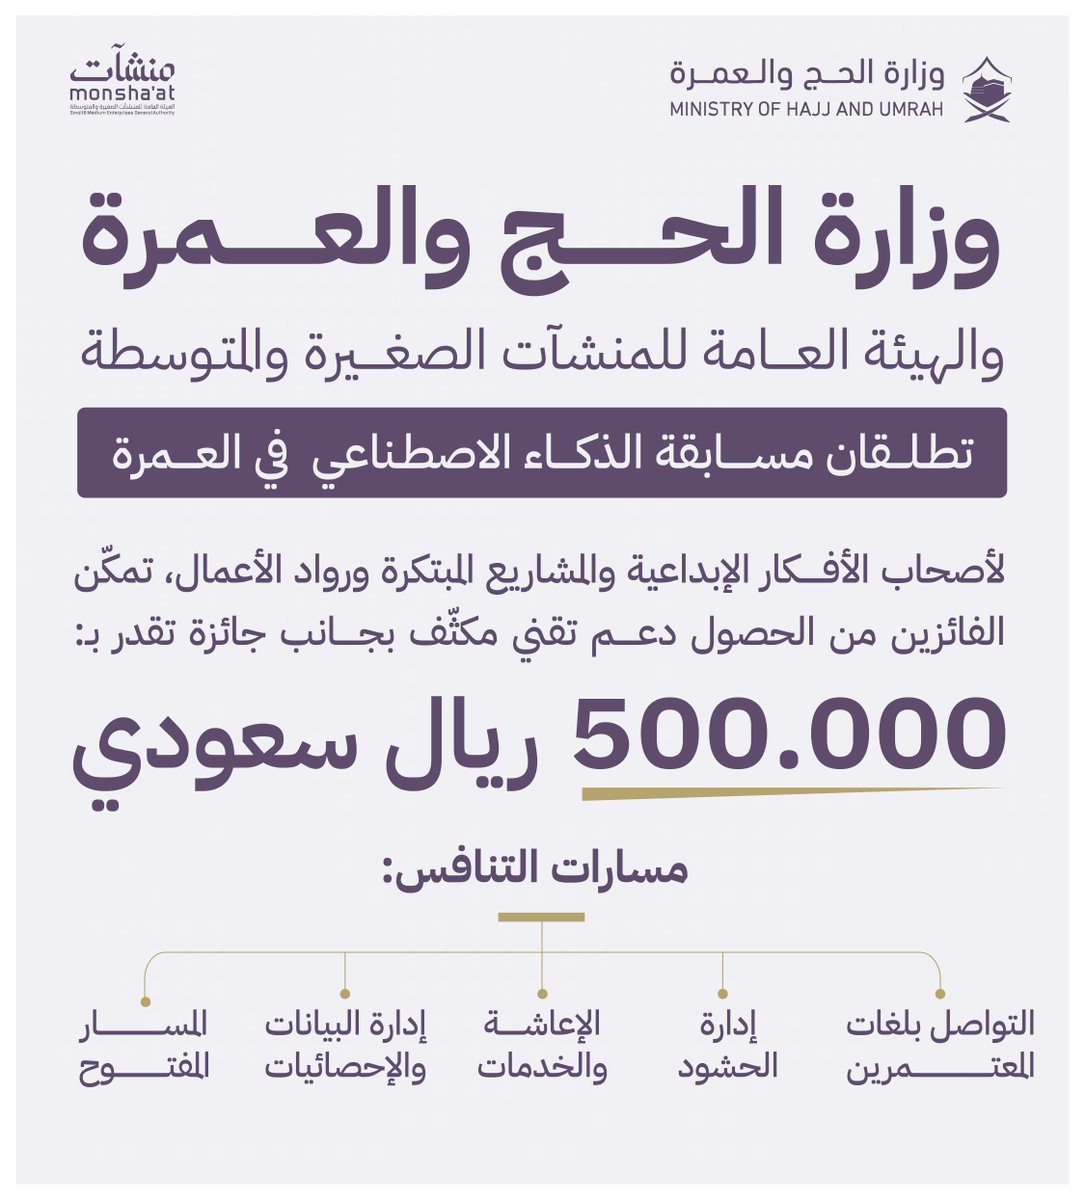 بالشراكة مع منشآت، معالي وزير الحج والعمرة ⁦@tfrabiah⁩ يُعلن عن إطلاق مسابقة الذكاء الاصطناعي في العمرة، بجوائز تصل قيمتها إلى خمسمائة ألف ريال.

#الطريق_إلى_النسك